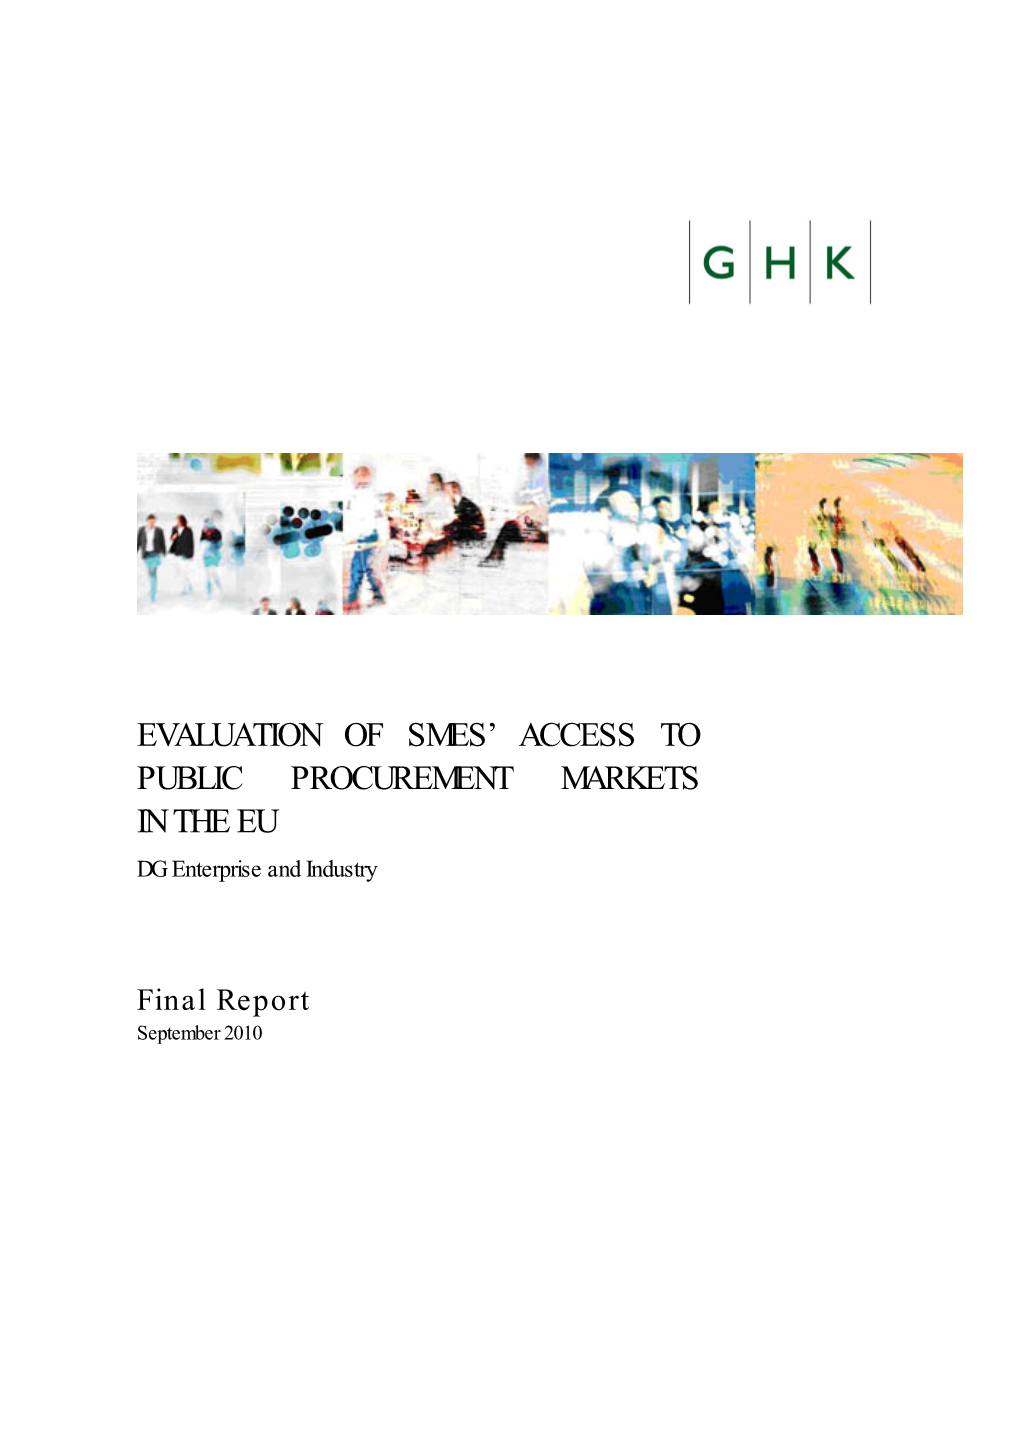 Evaluation of Smes' Access to Public Procurement